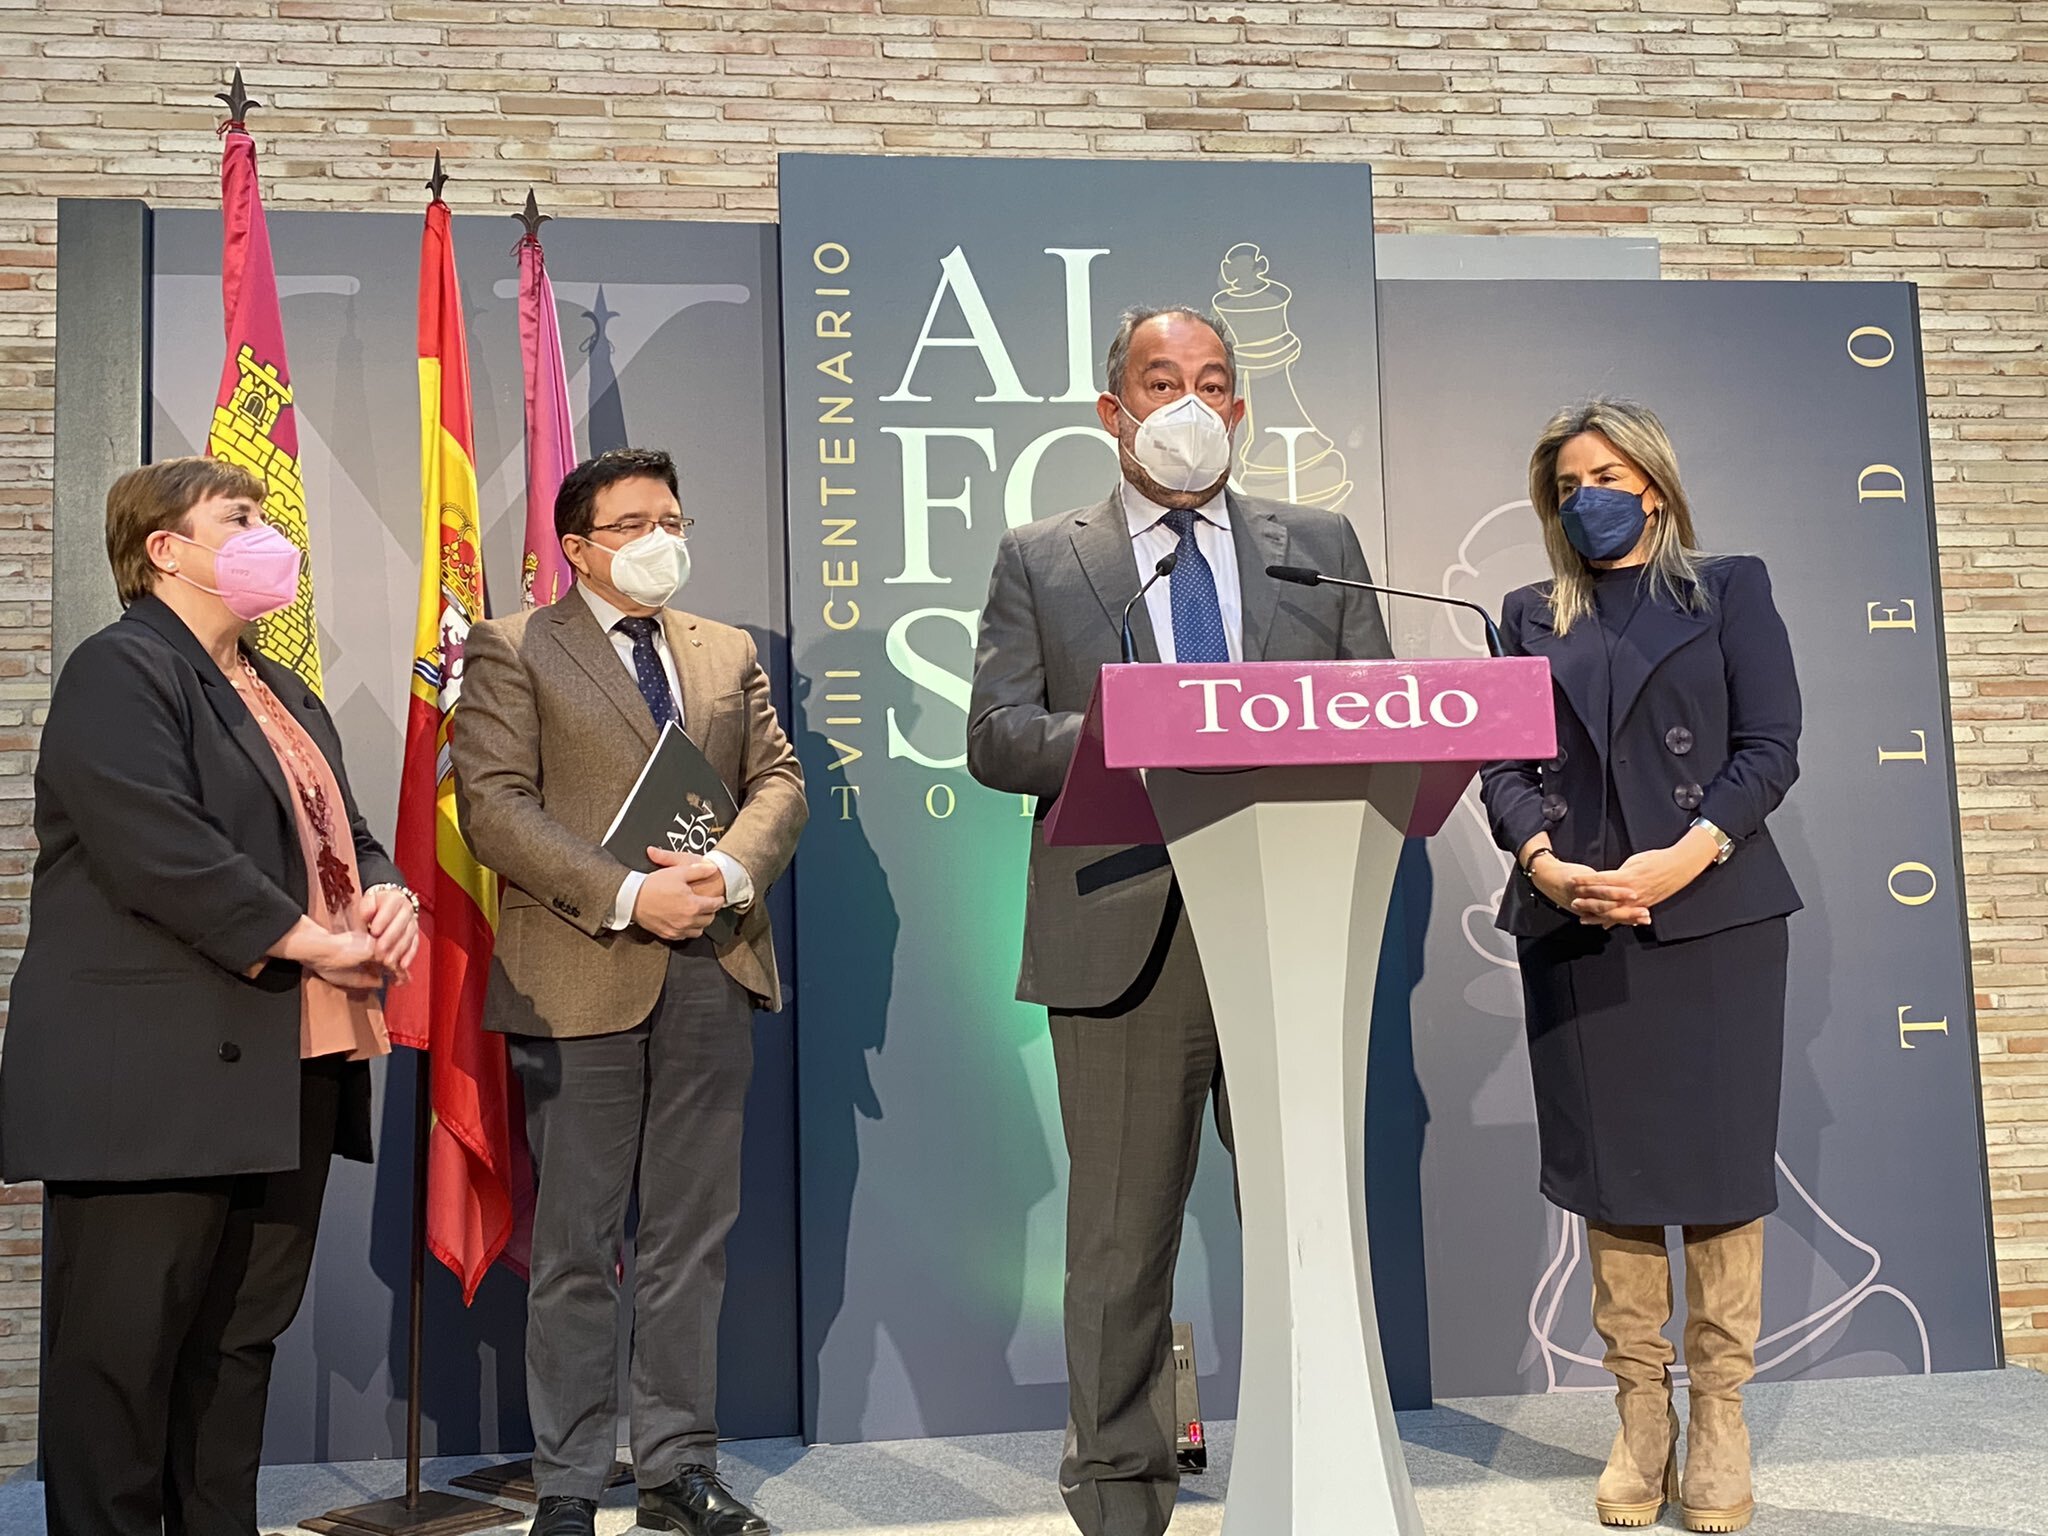 La Escuela de Traductores de Toledo organiza un congreso internacional para conmemorar el VIII centenario del nacimiento de Alfonso X el Sabio